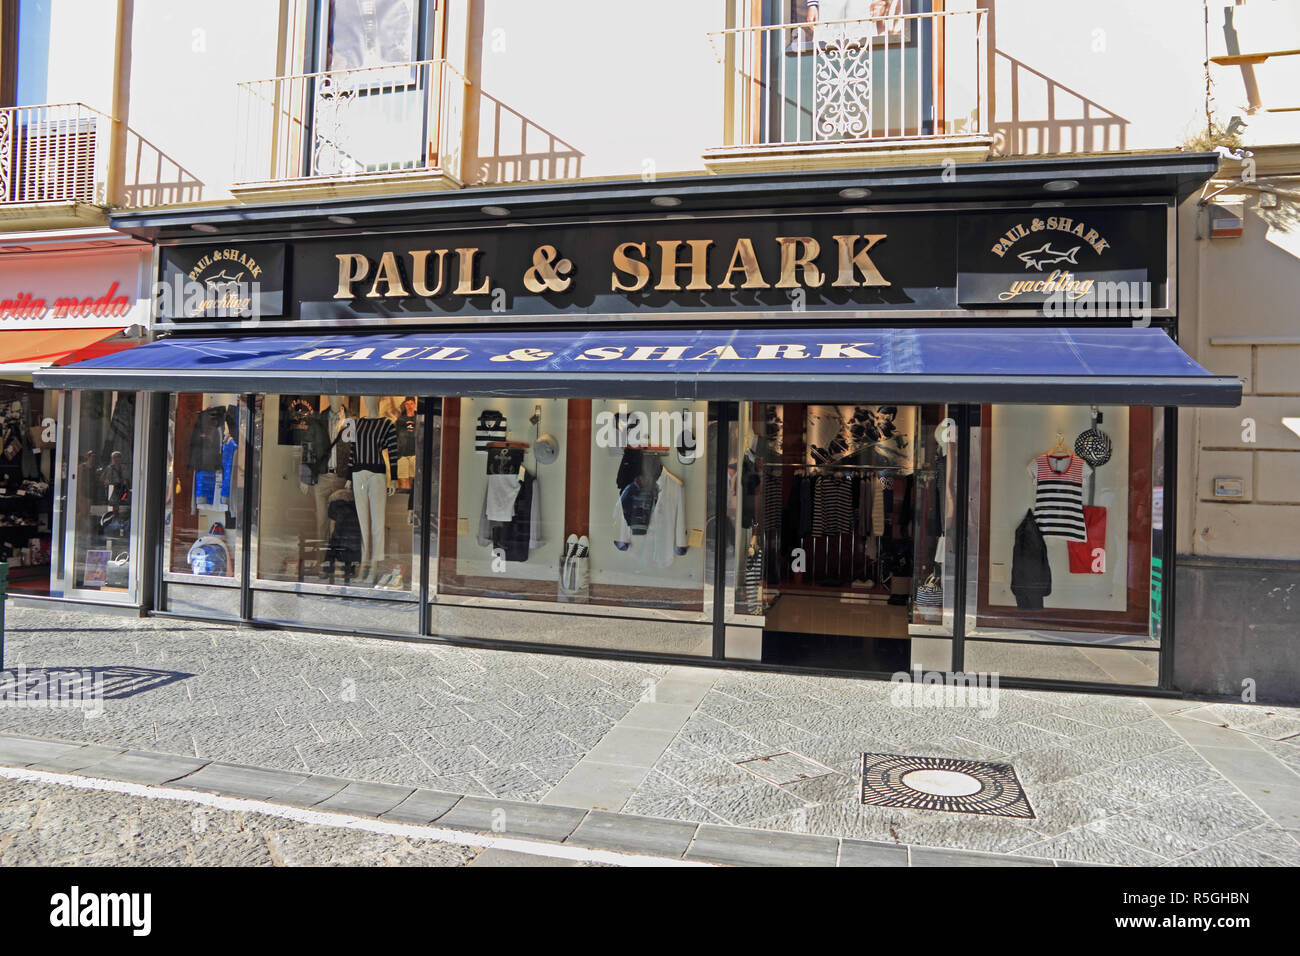 Pauk & Shark tienda de ropa, Sorrento, Italia Foto de stock